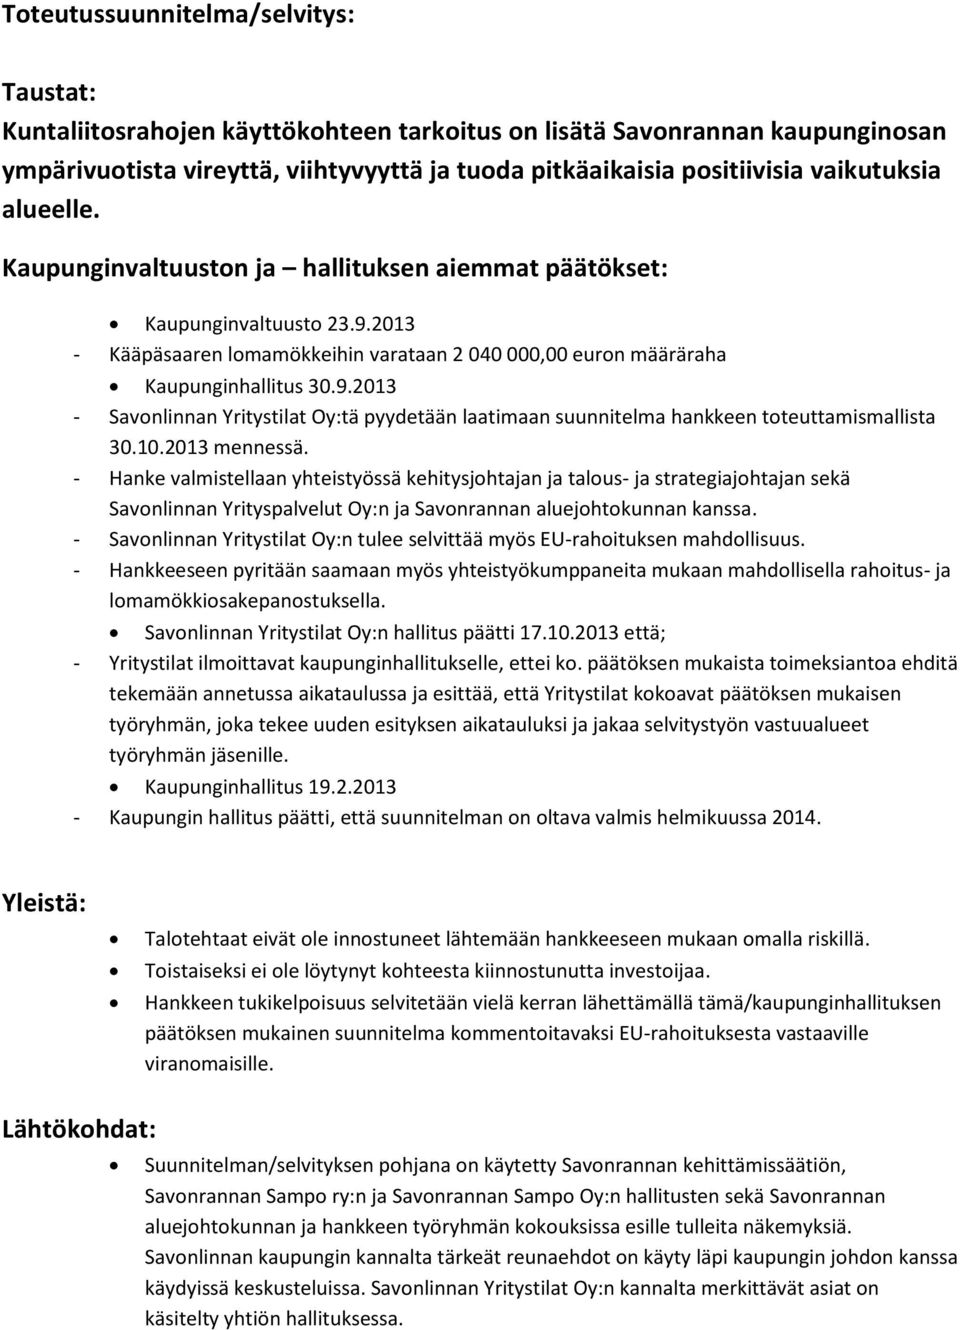 2013 - Kääpäsaaren lomamökkeihin varataan 2 040 000,00 euron määräraha Kaupunginhallitus 30.9.2013 - Savonlinnan Yritystilat Oy:tä pyydetään laatimaan suunnitelma hankkeen toteuttamismallista 30.10.